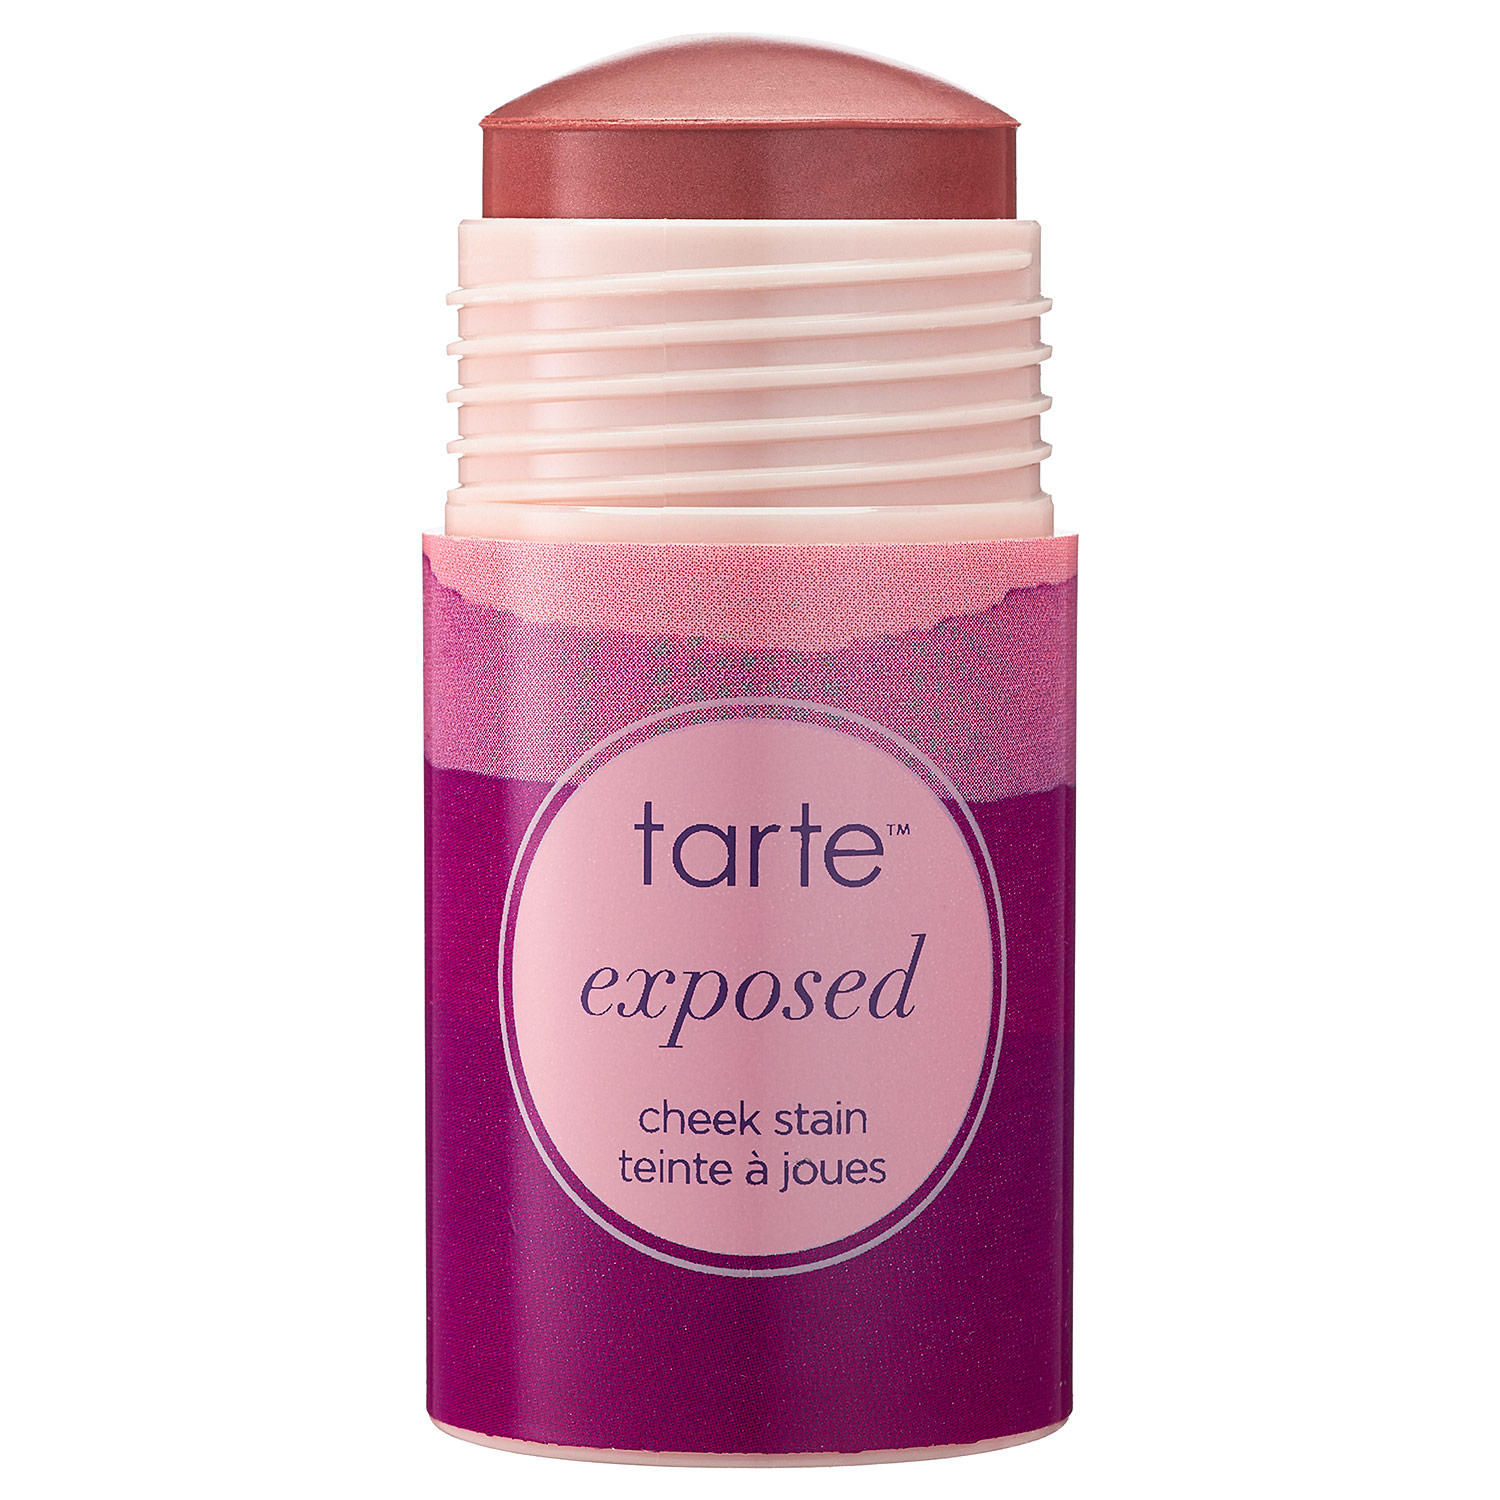 Tarte Exposed Cheek Stain